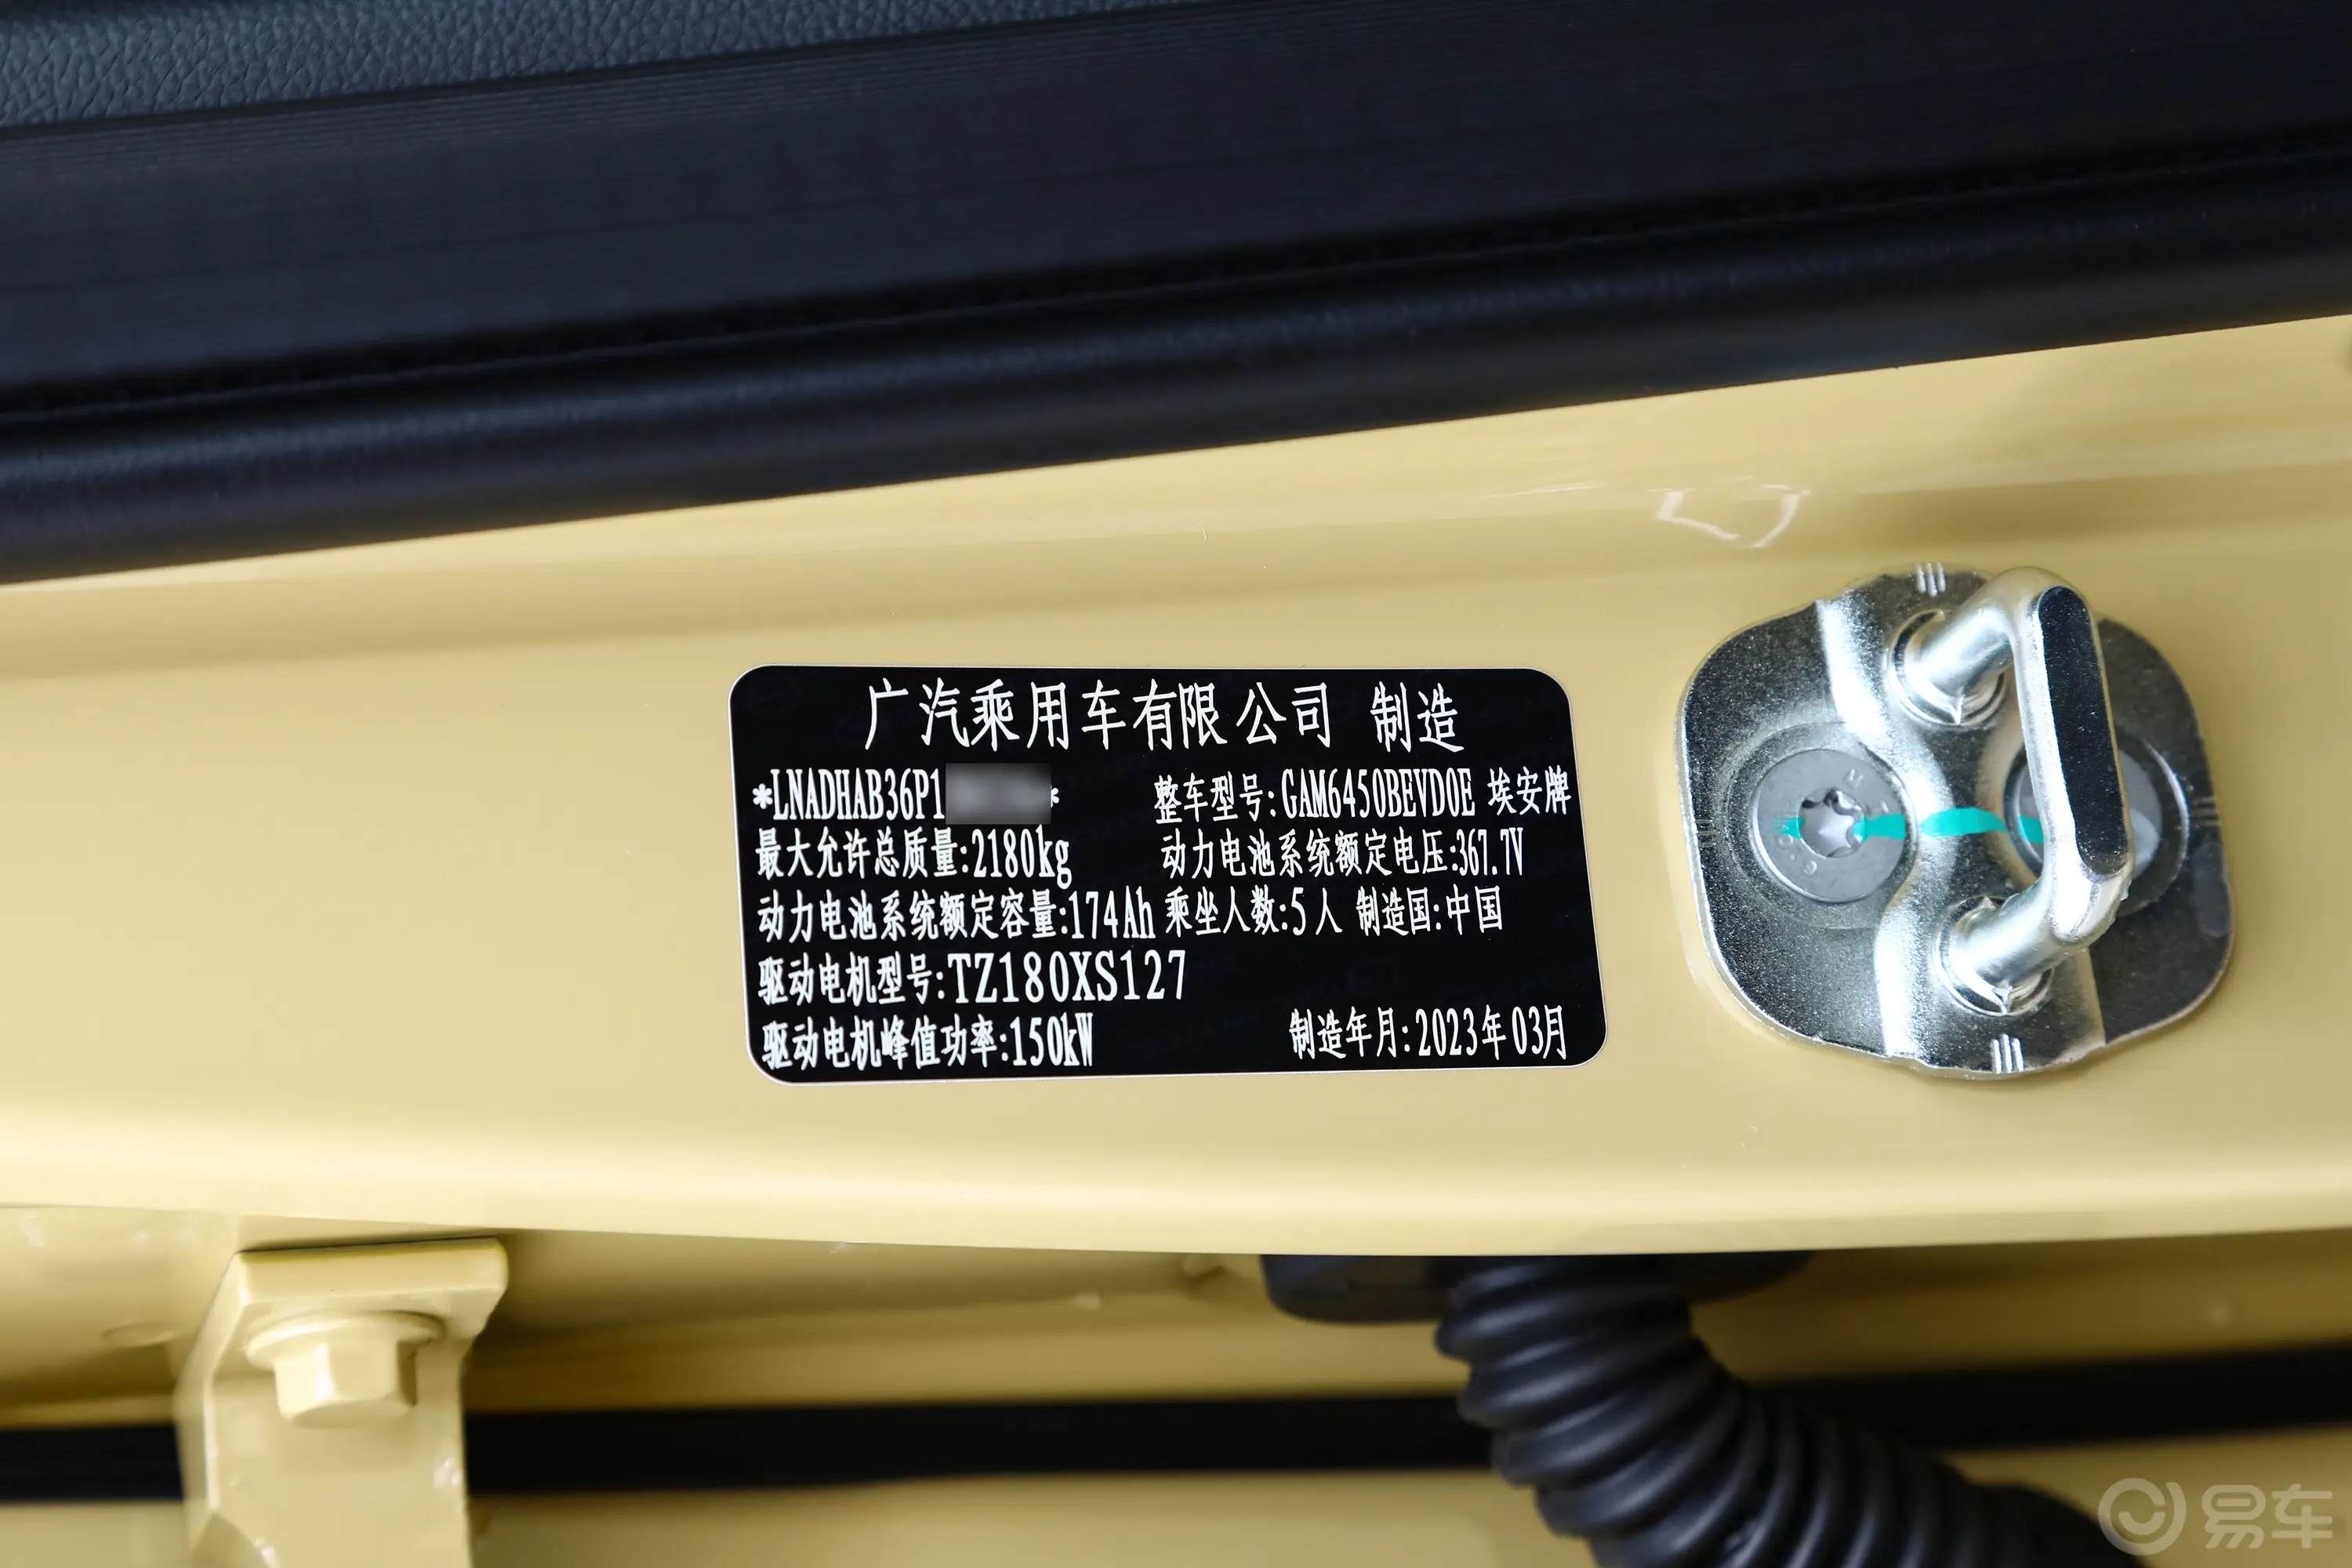 AION YPlus 510km 510 科技版 磷酸铁锂车辆信息铭牌